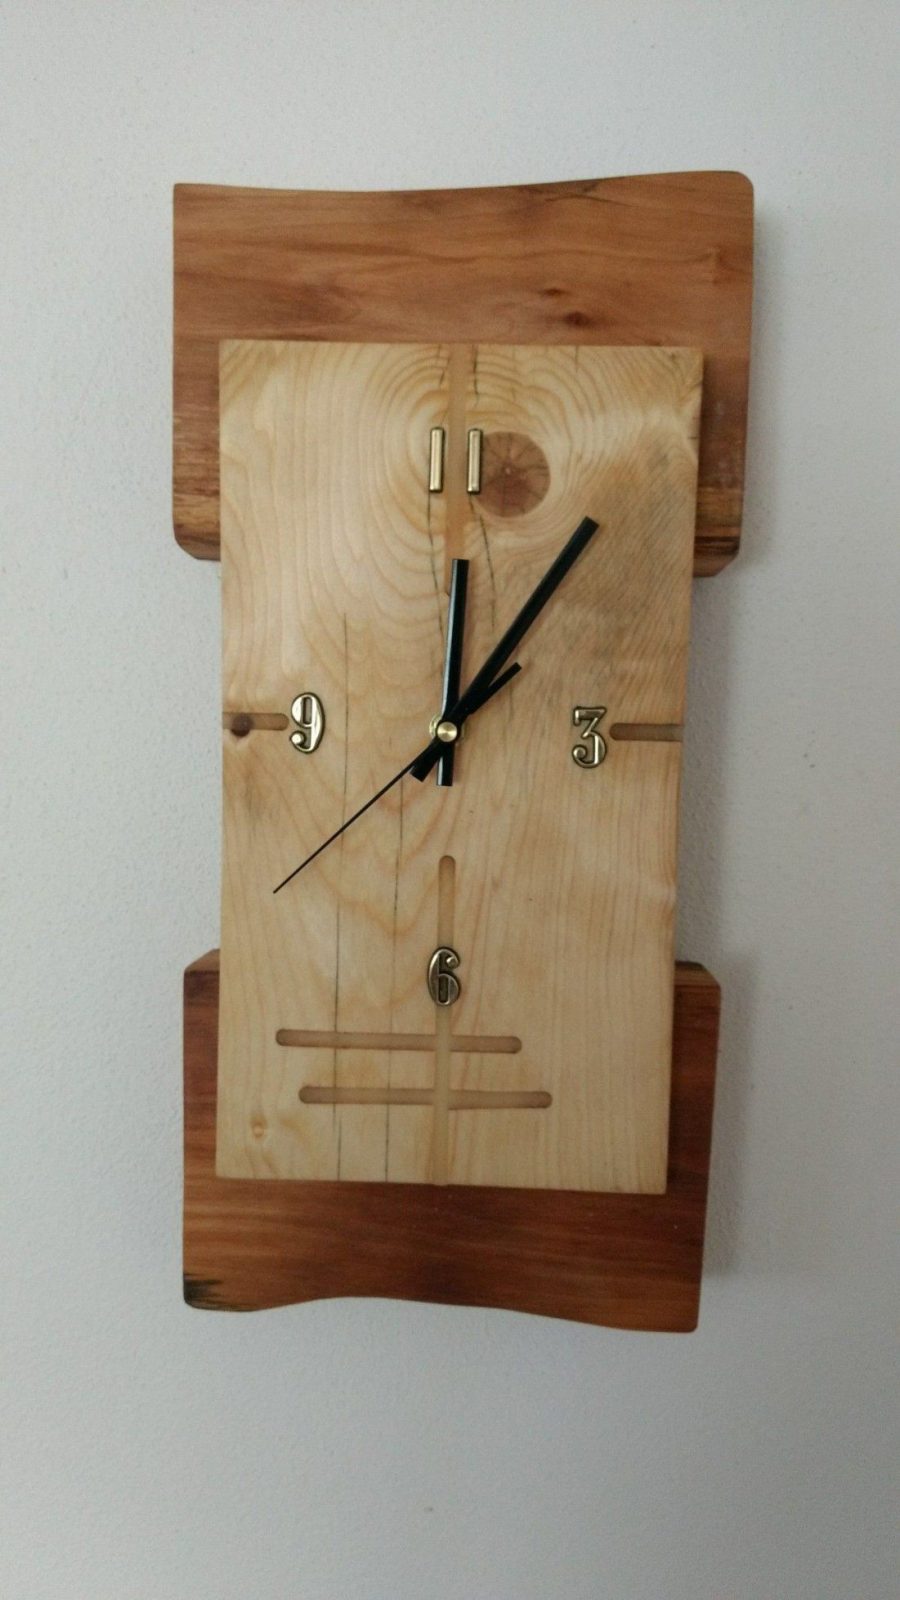 Pin Von Krzysztof Krupski Auf Zegary  Pinterest  Uhren Moderne von Wanduhr Holz Selber Machen Bild